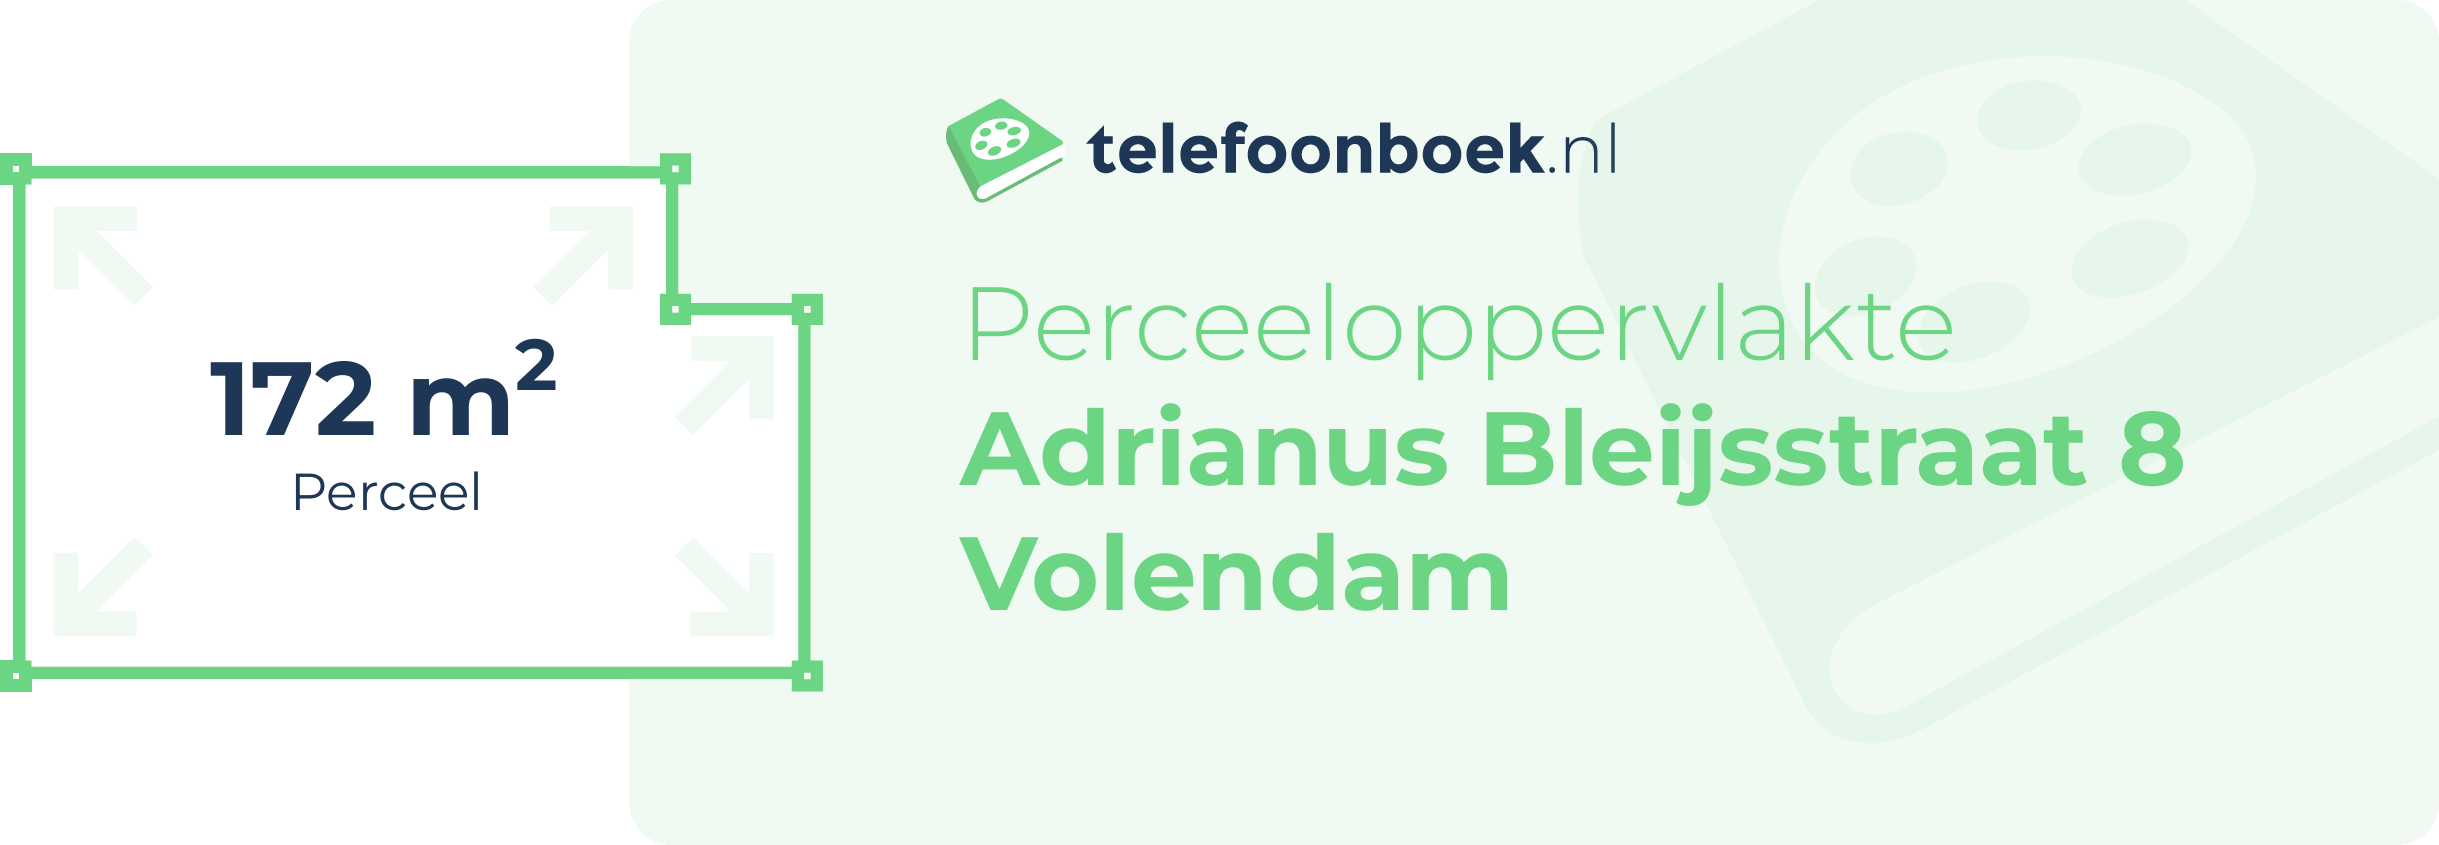 Perceeloppervlakte Adrianus Bleijsstraat 8 Volendam